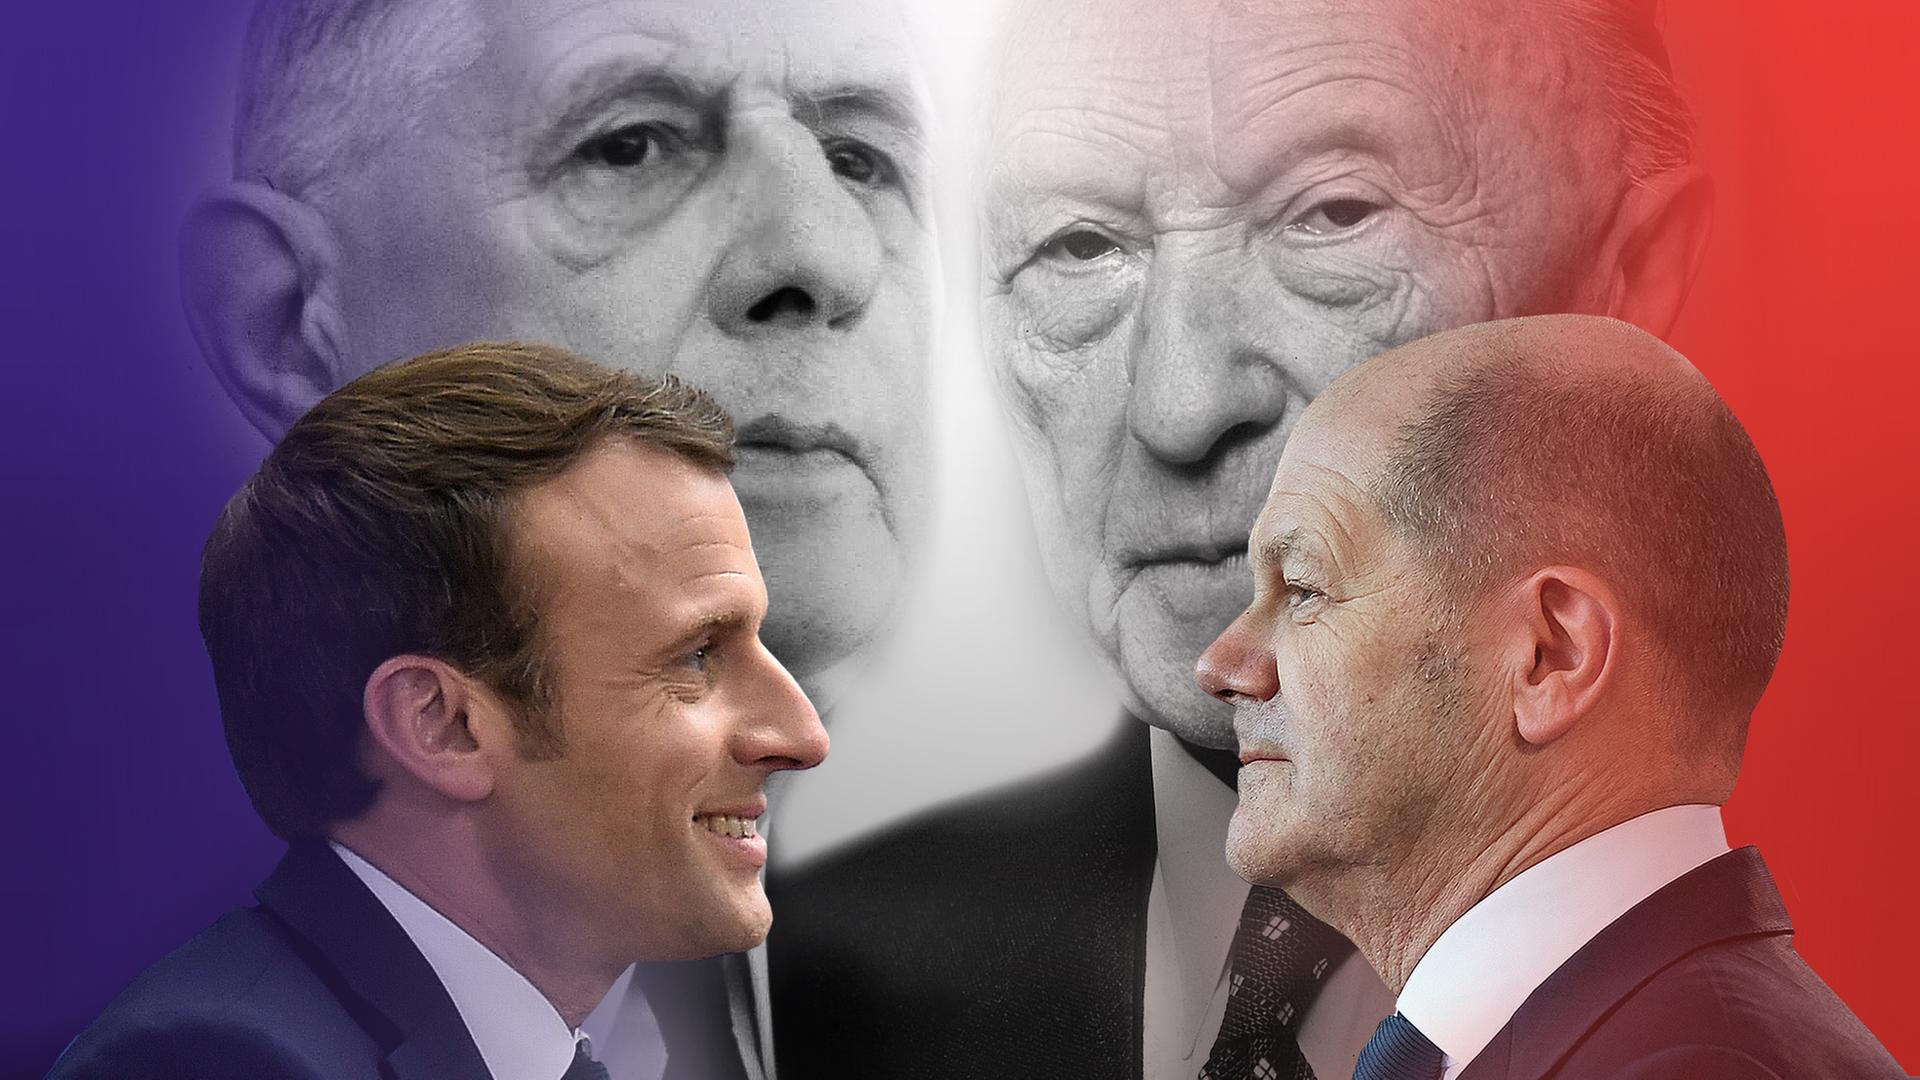 Collage aus Einzelbildern von Charles de Gaulle, Emmanuel Macron, Konrad Adenauer, Olaf Scholz